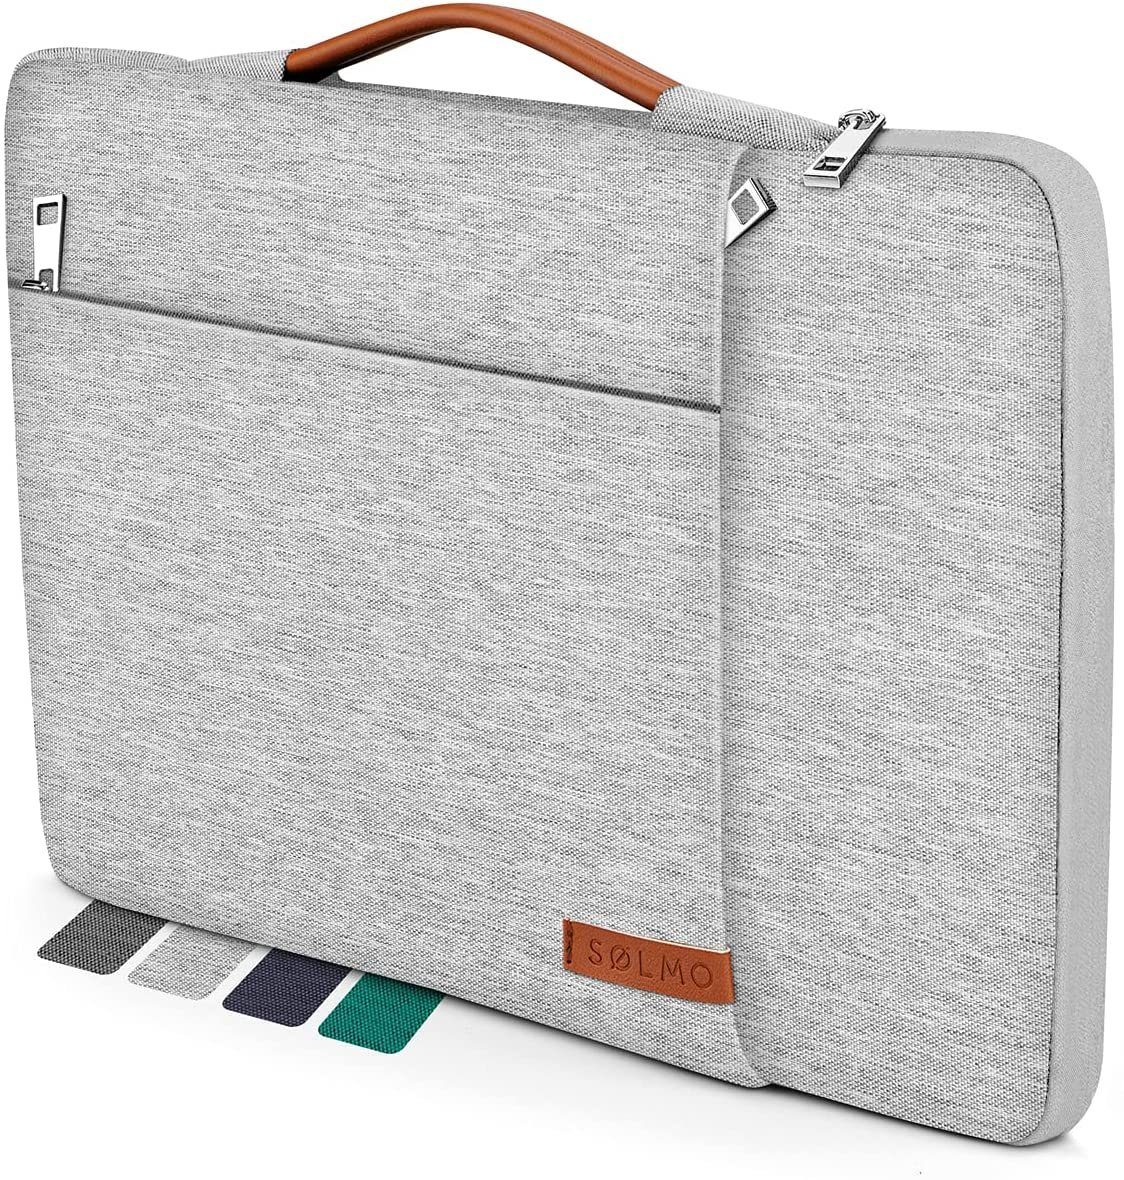 sølmo Laptoptasche »Design Laptoptasche 13 Zoll - stoßfeste Notebooktasche  geeignet für 13 Zoll MacBook Air, MacBook Pro 13, 12.3 Surface Pro« online  kaufen | OTTO